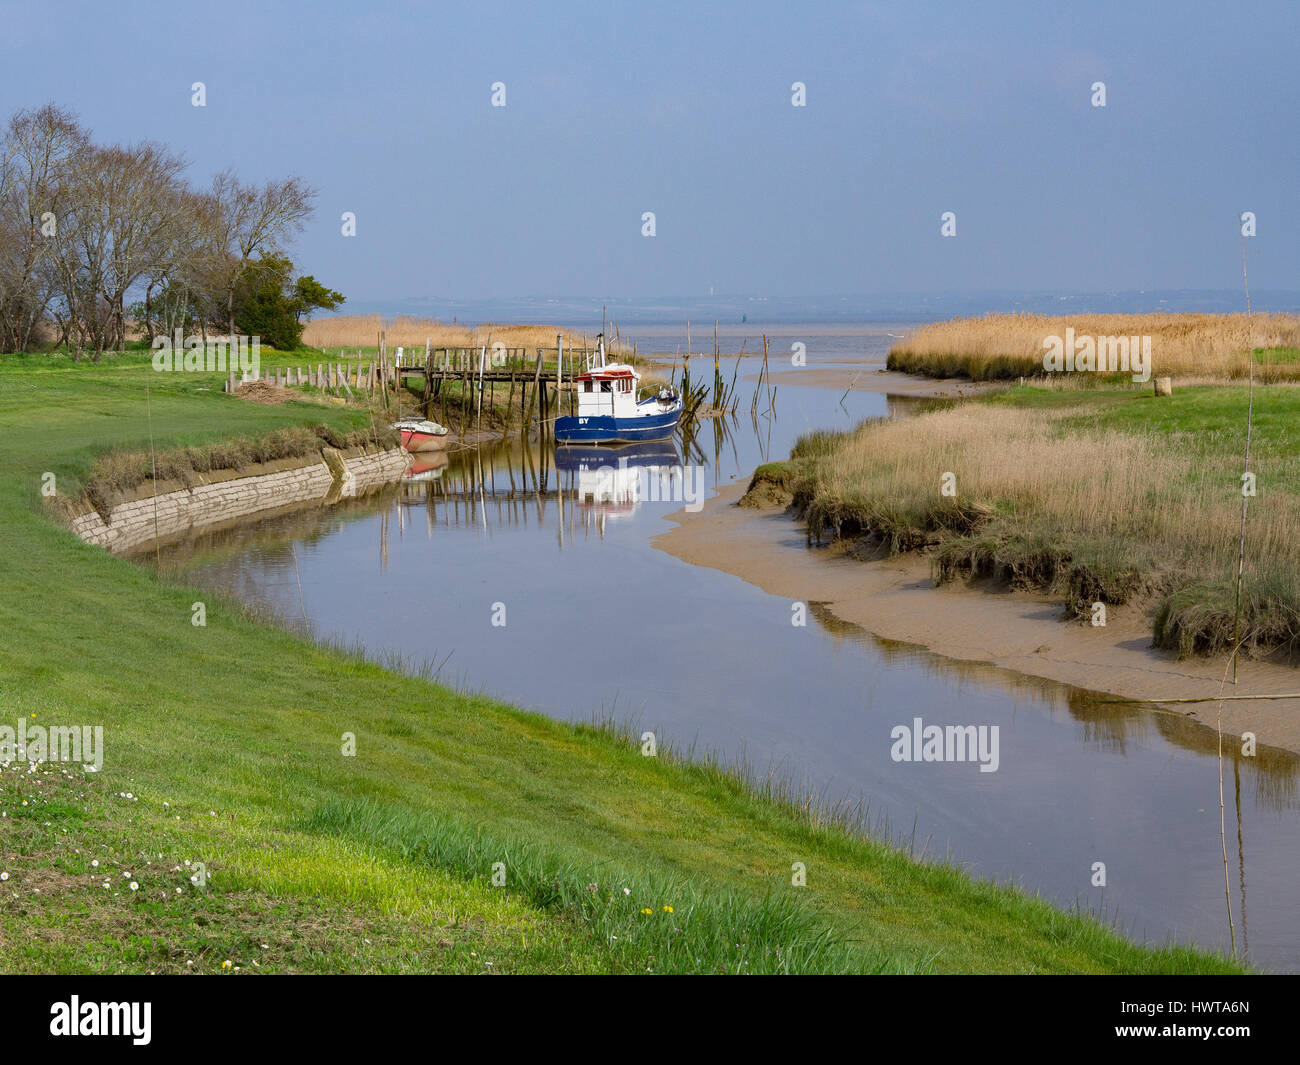 Petit bateau de pêche amarré au port de By, estuaire de la Gironde, Aquitaine, France. Banque D'Images